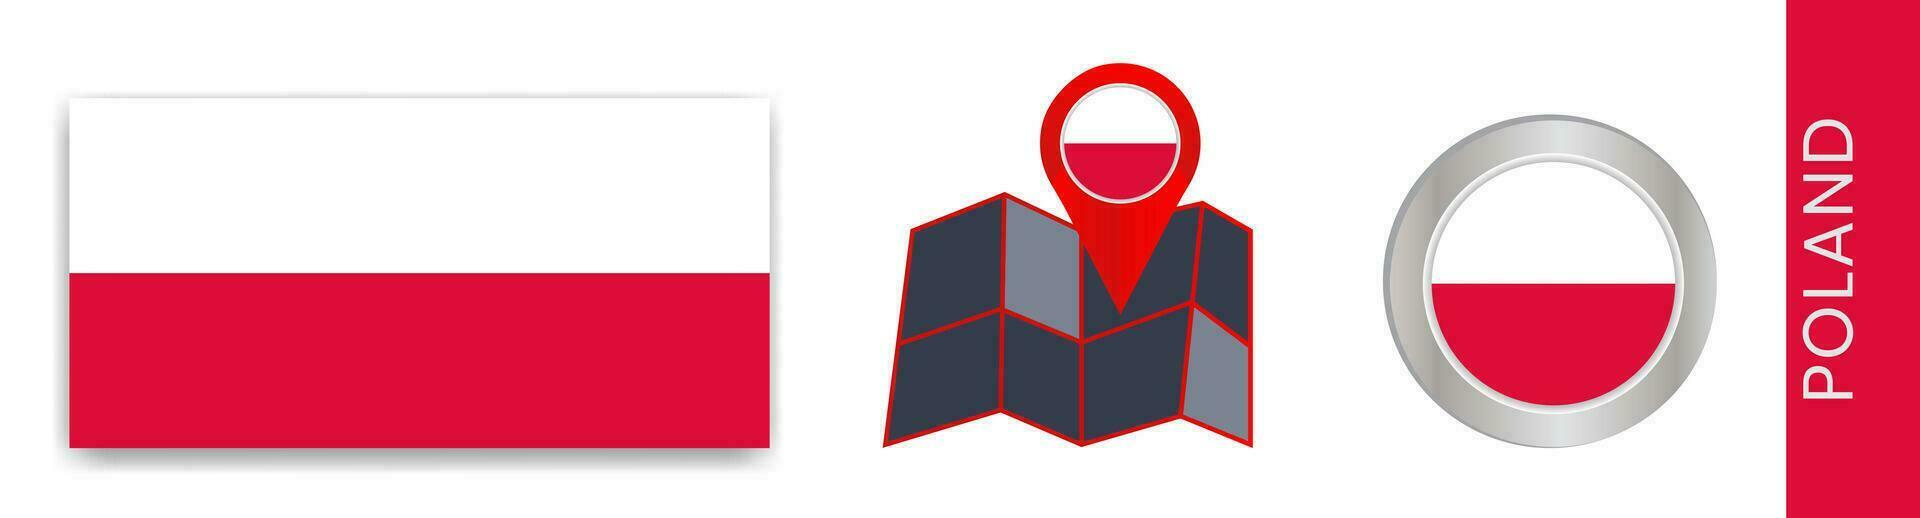 verzameling van Pools nationaal vlaggen geïsoleerd in officieel kleuren en kaart pictogrammen van Polen met land vlaggen. vector